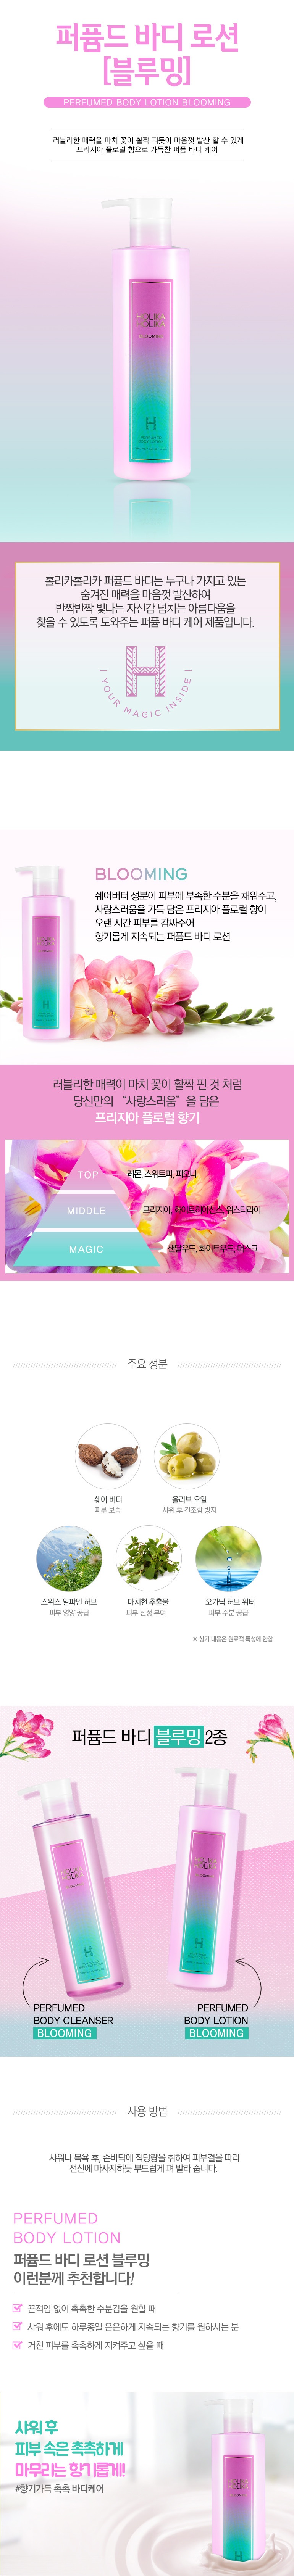 Holika Holika Perfumed Body Lotion Blooming korean hair care product online shop malaysia China Hong Kong